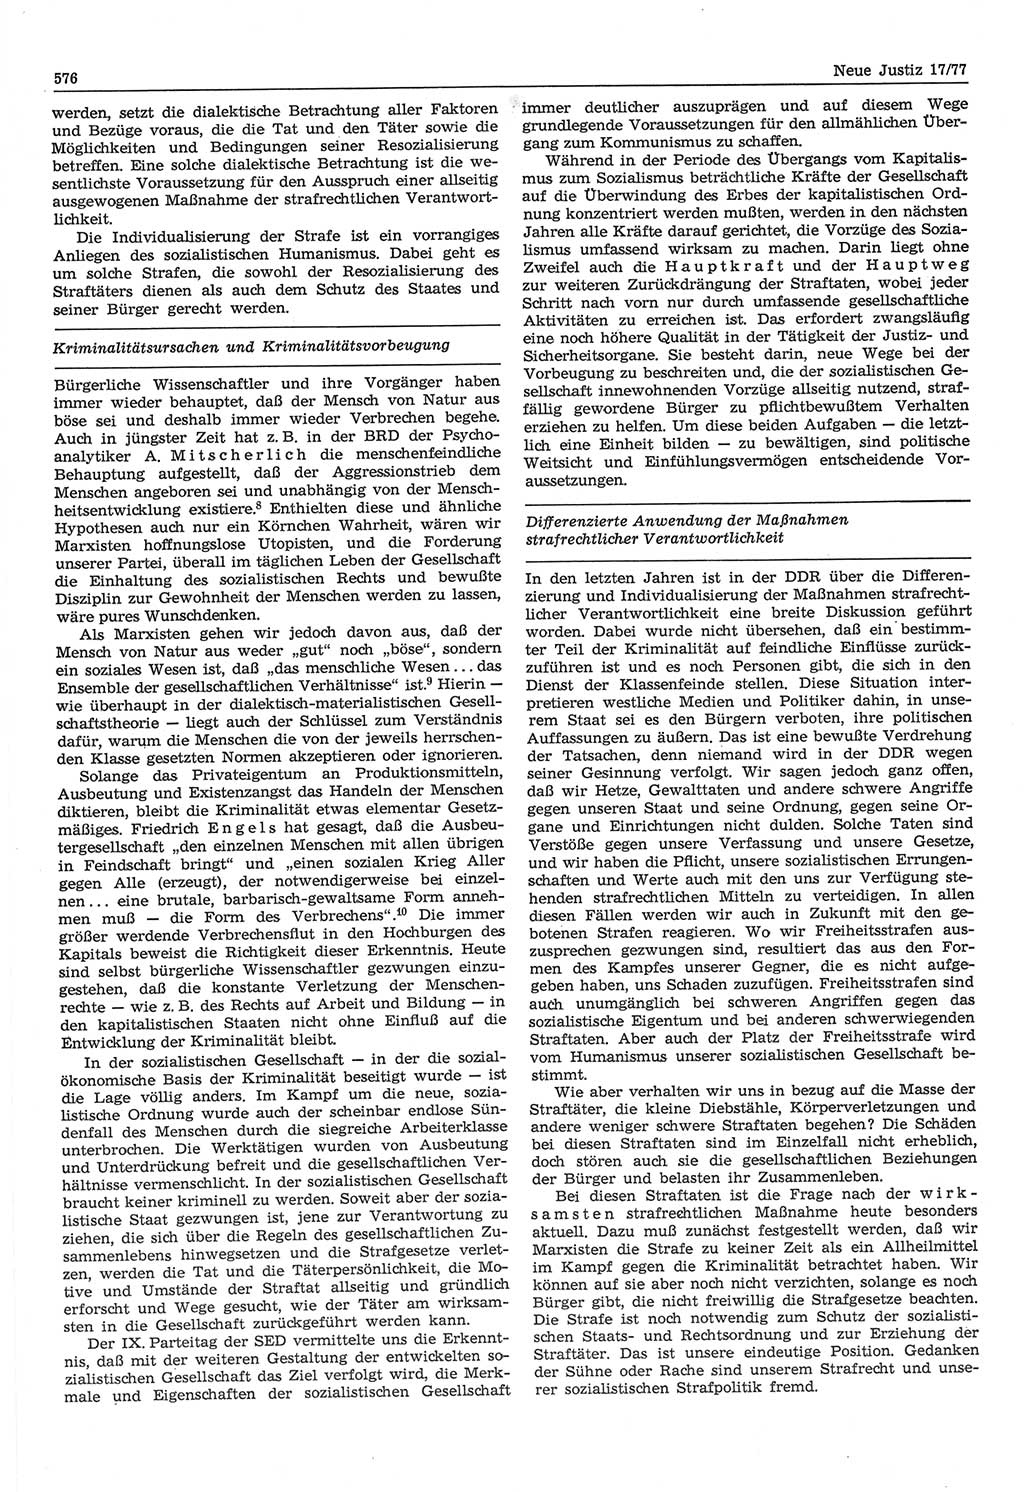 Neue Justiz (NJ), Zeitschrift für Recht und Rechtswissenschaft-Zeitschrift, sozialistisches Recht und Gesetzlichkeit, 31. Jahrgang 1977, Seite 576 (NJ DDR 1977, S. 576)